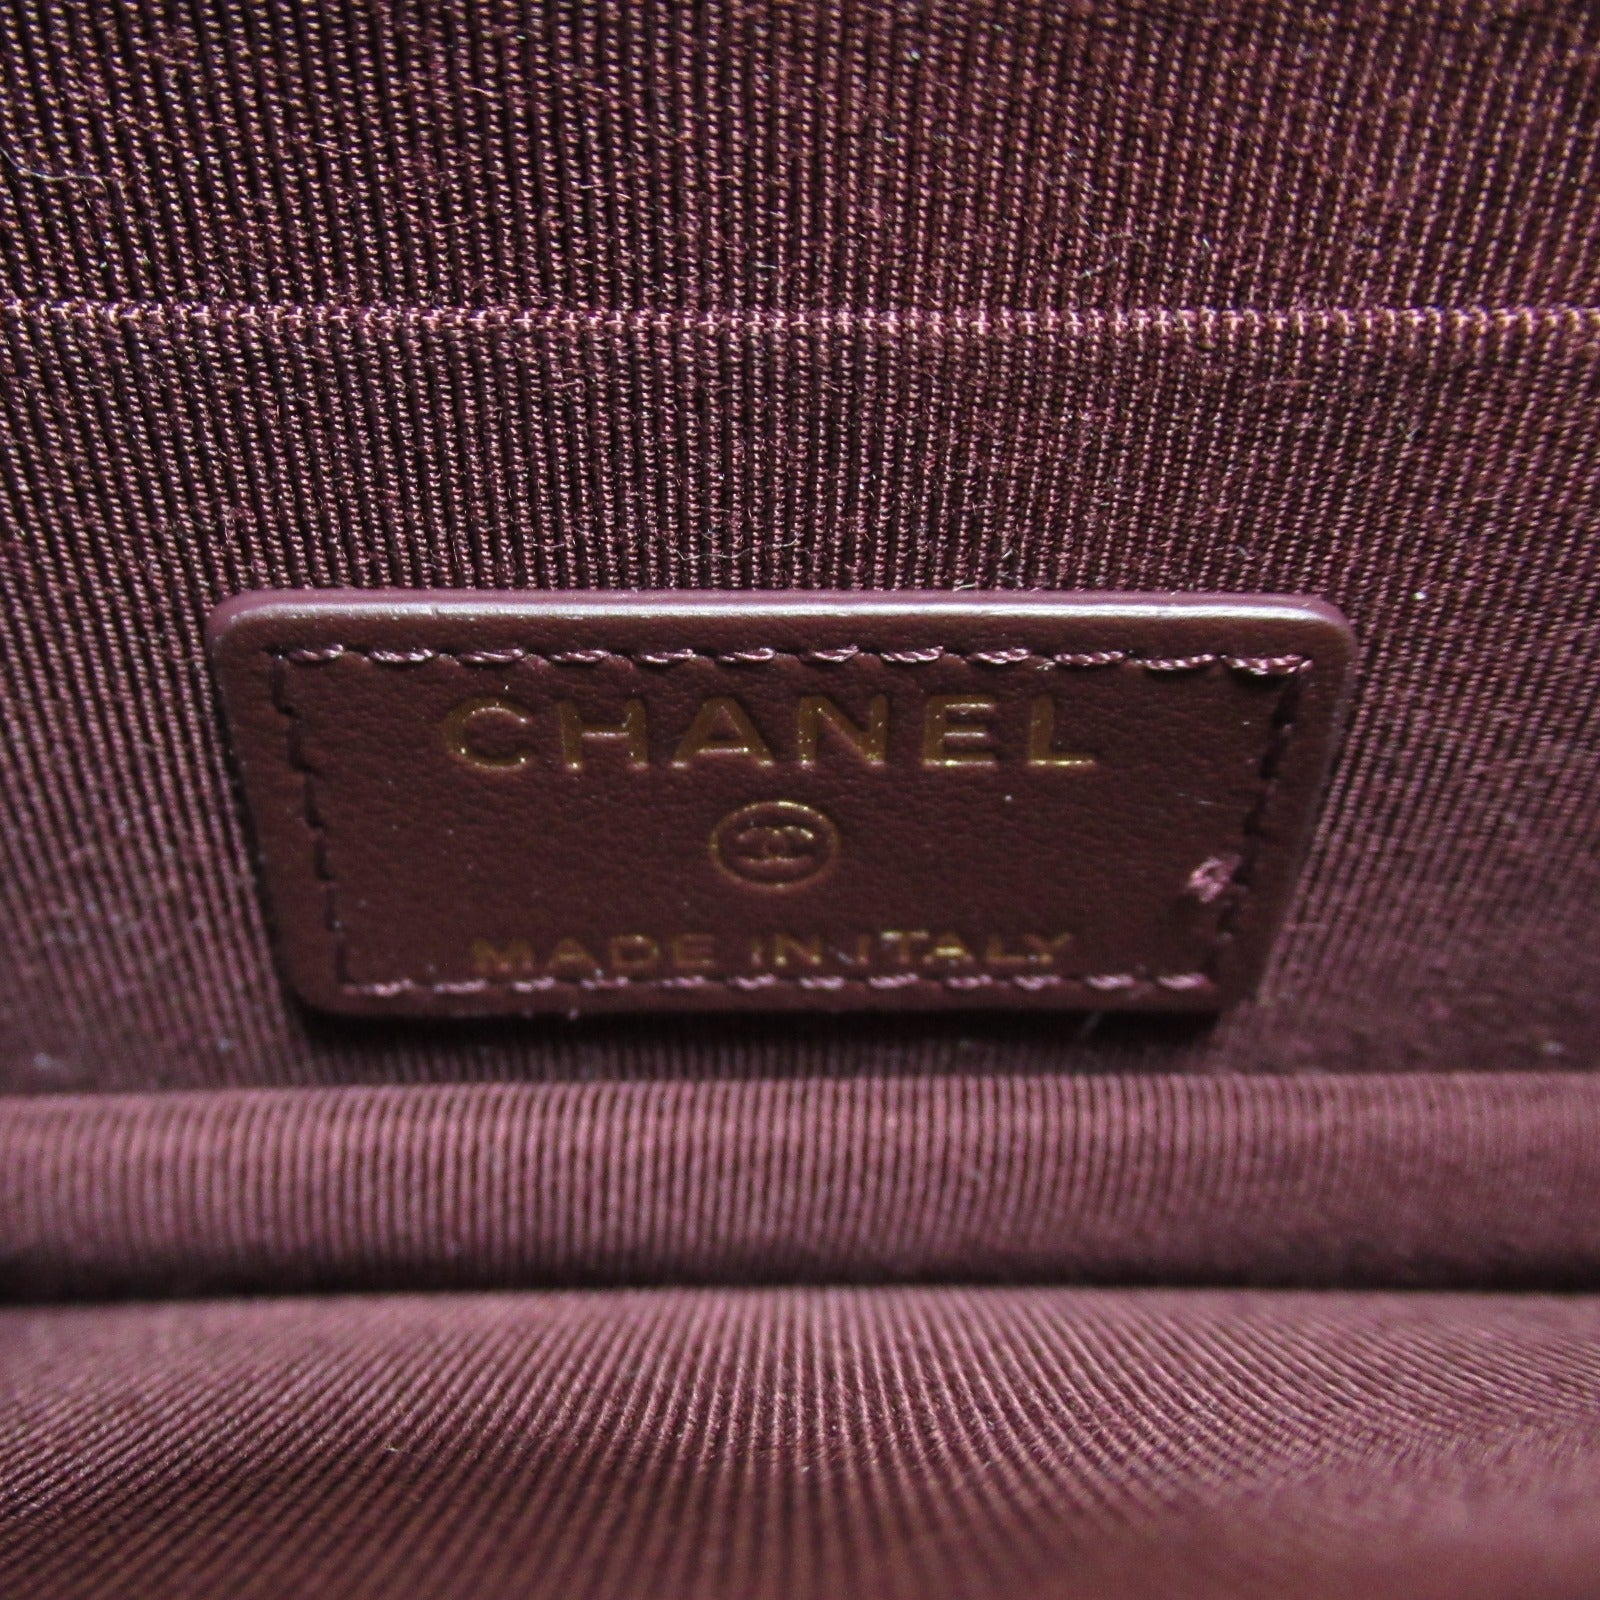 Chanel Chain Wallet Chain Wallet Chain Wallet, Chain Wallet, Chain Wallet, Chain Wallet, Chain Wallet, Chain Wallet, Chain Wallet, Chain Wallet, Chain Wallet